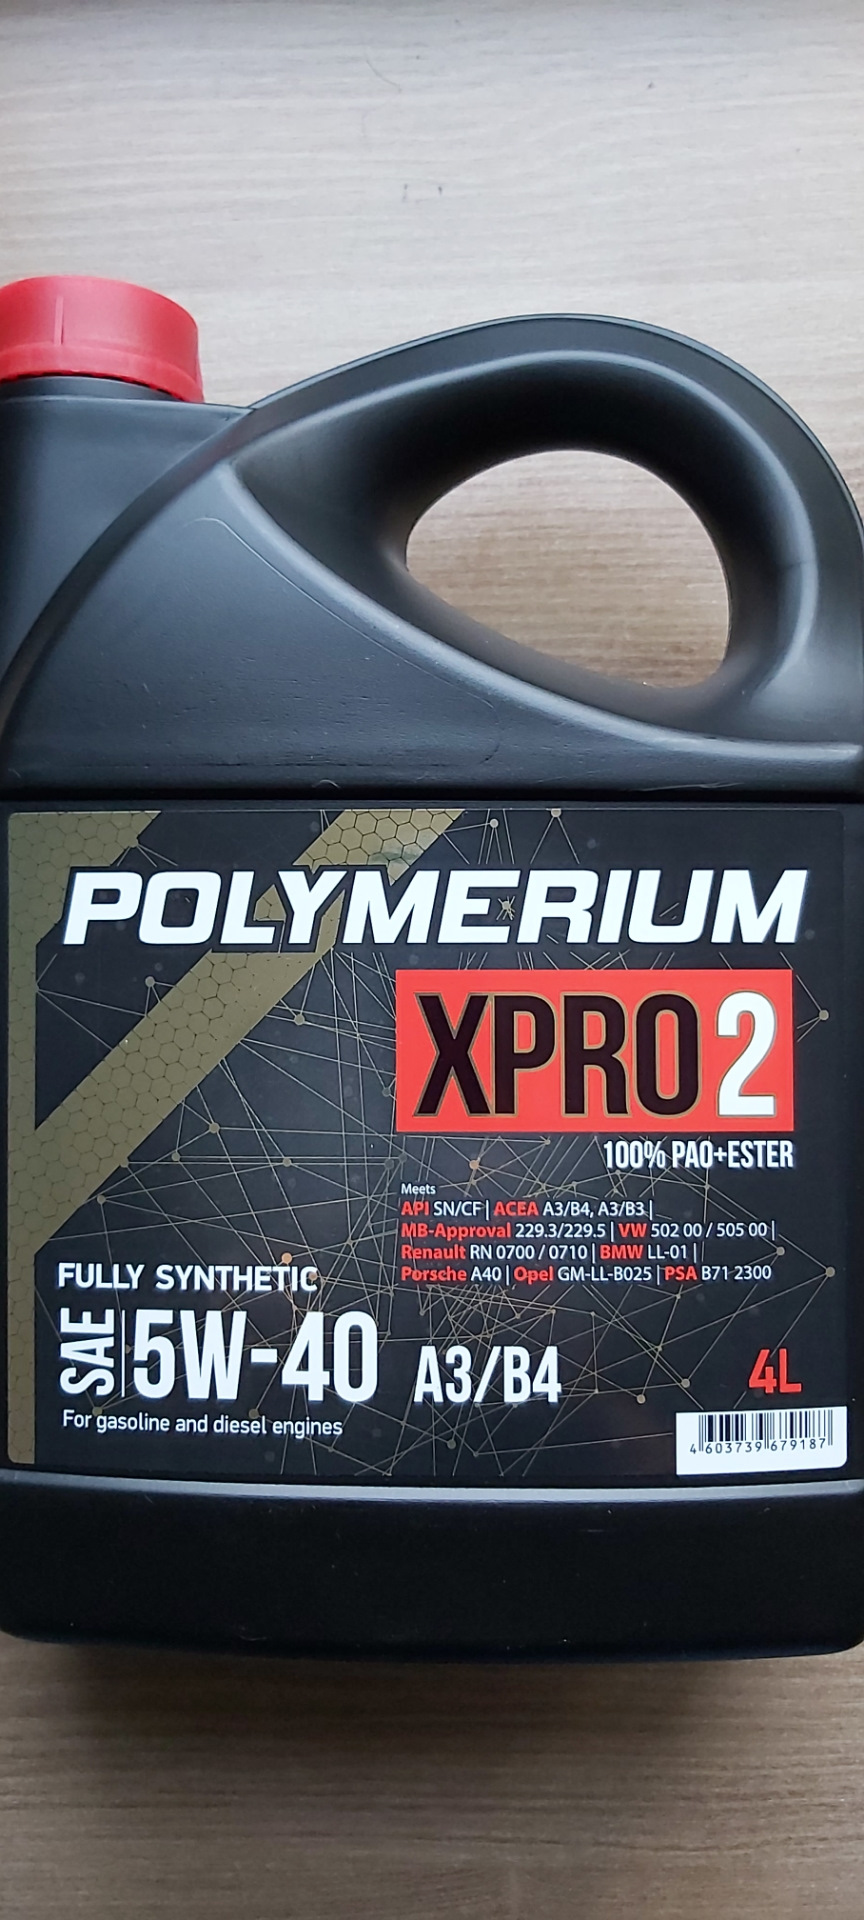 Масло полимериум цена. Полимериум 5w40 xpro2. Polymerium xpro2 5w-40. Полимериум 5w30 xpro1. Моторное масло полимериум 5w40.